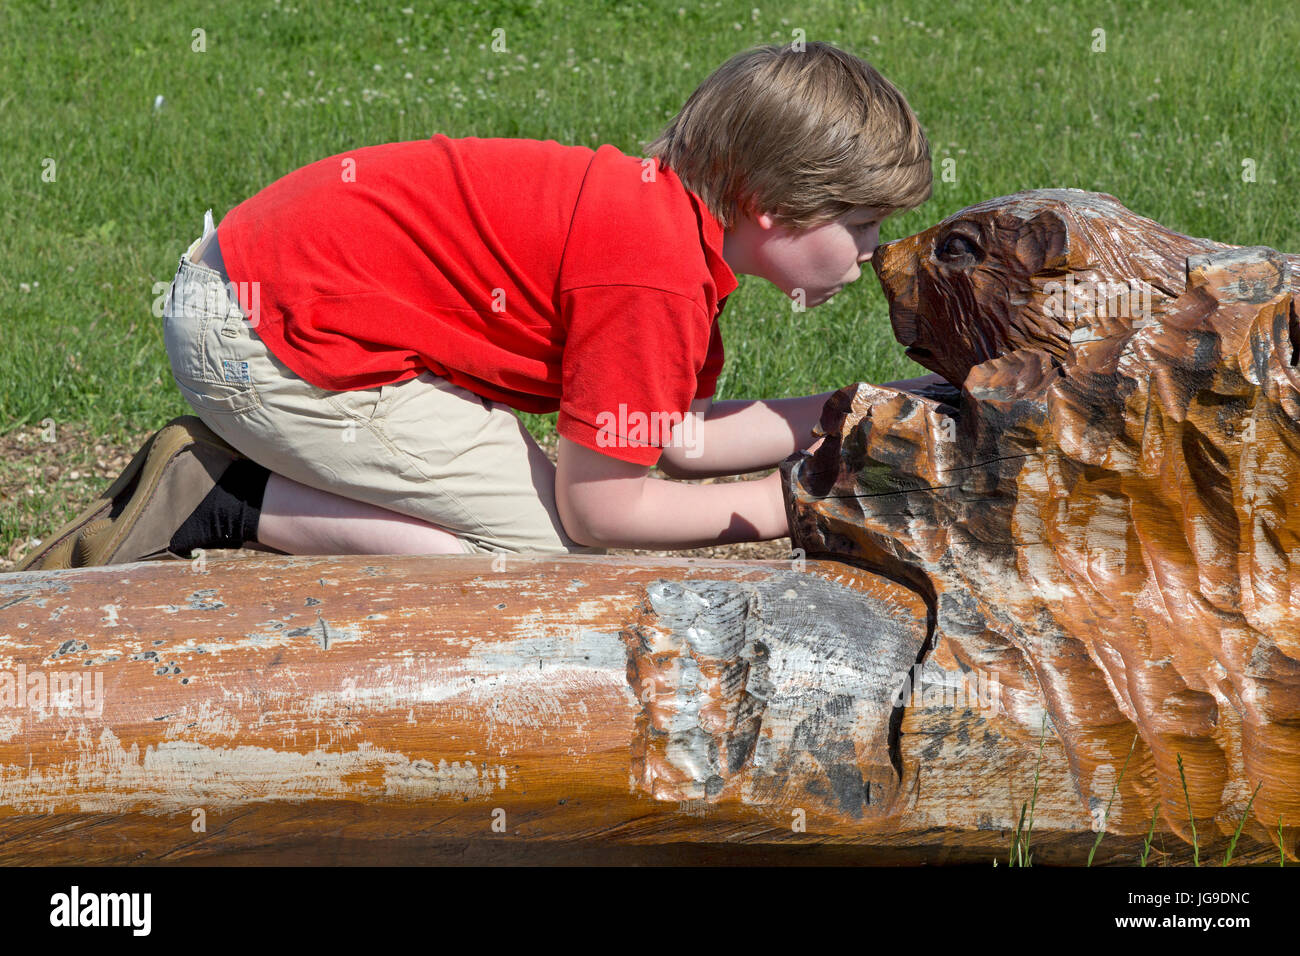 young boy imitating beaver, Boizenburg, Mecklenburg-West Pomerania, Germany Stock Photo